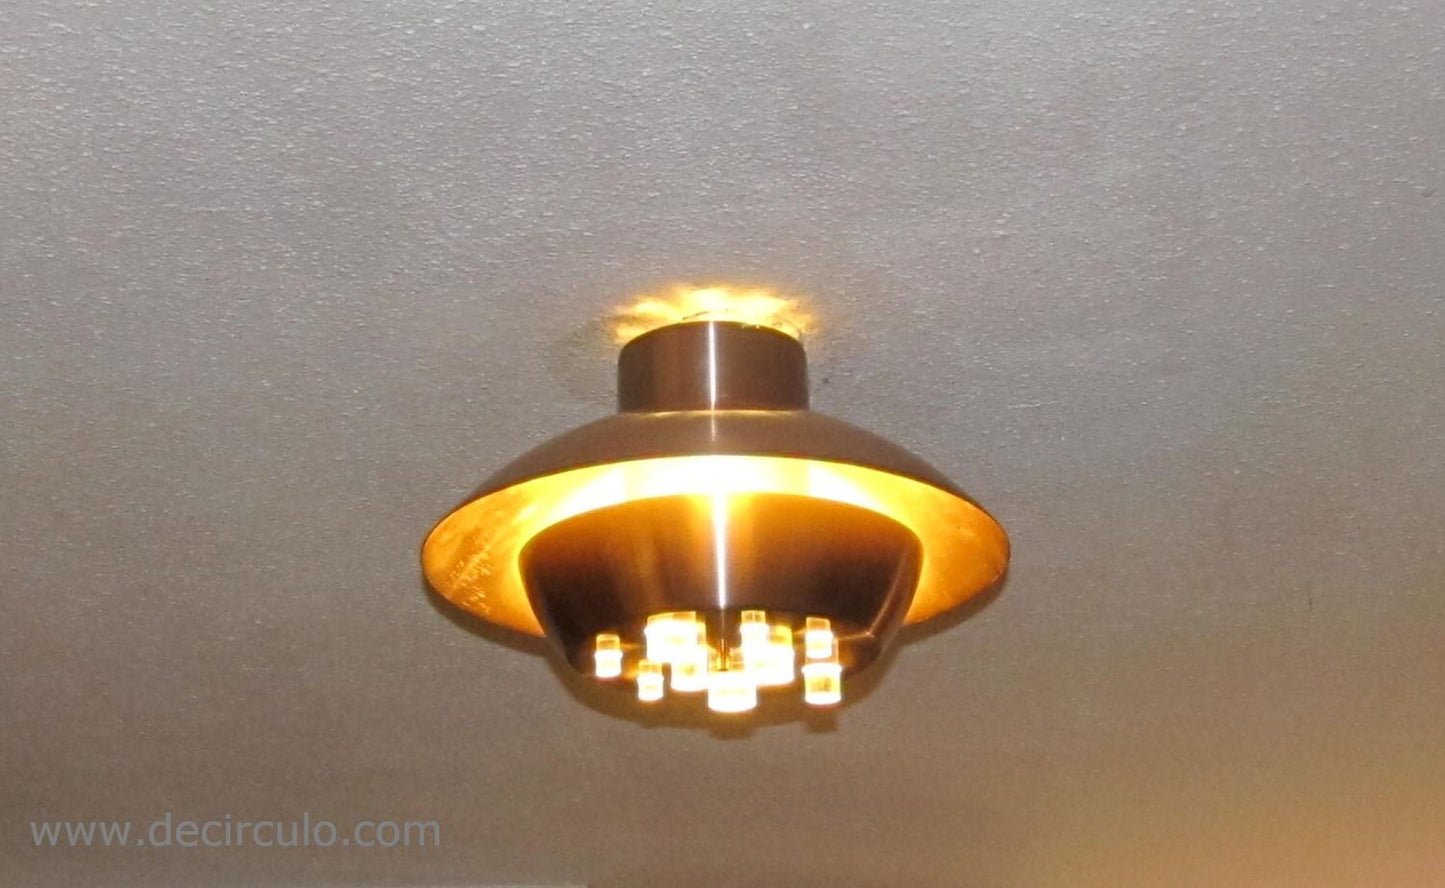 Raak amsterdam design plafondlamp b 1243 kan ook gebruikt worden als hanglamp jaren 60